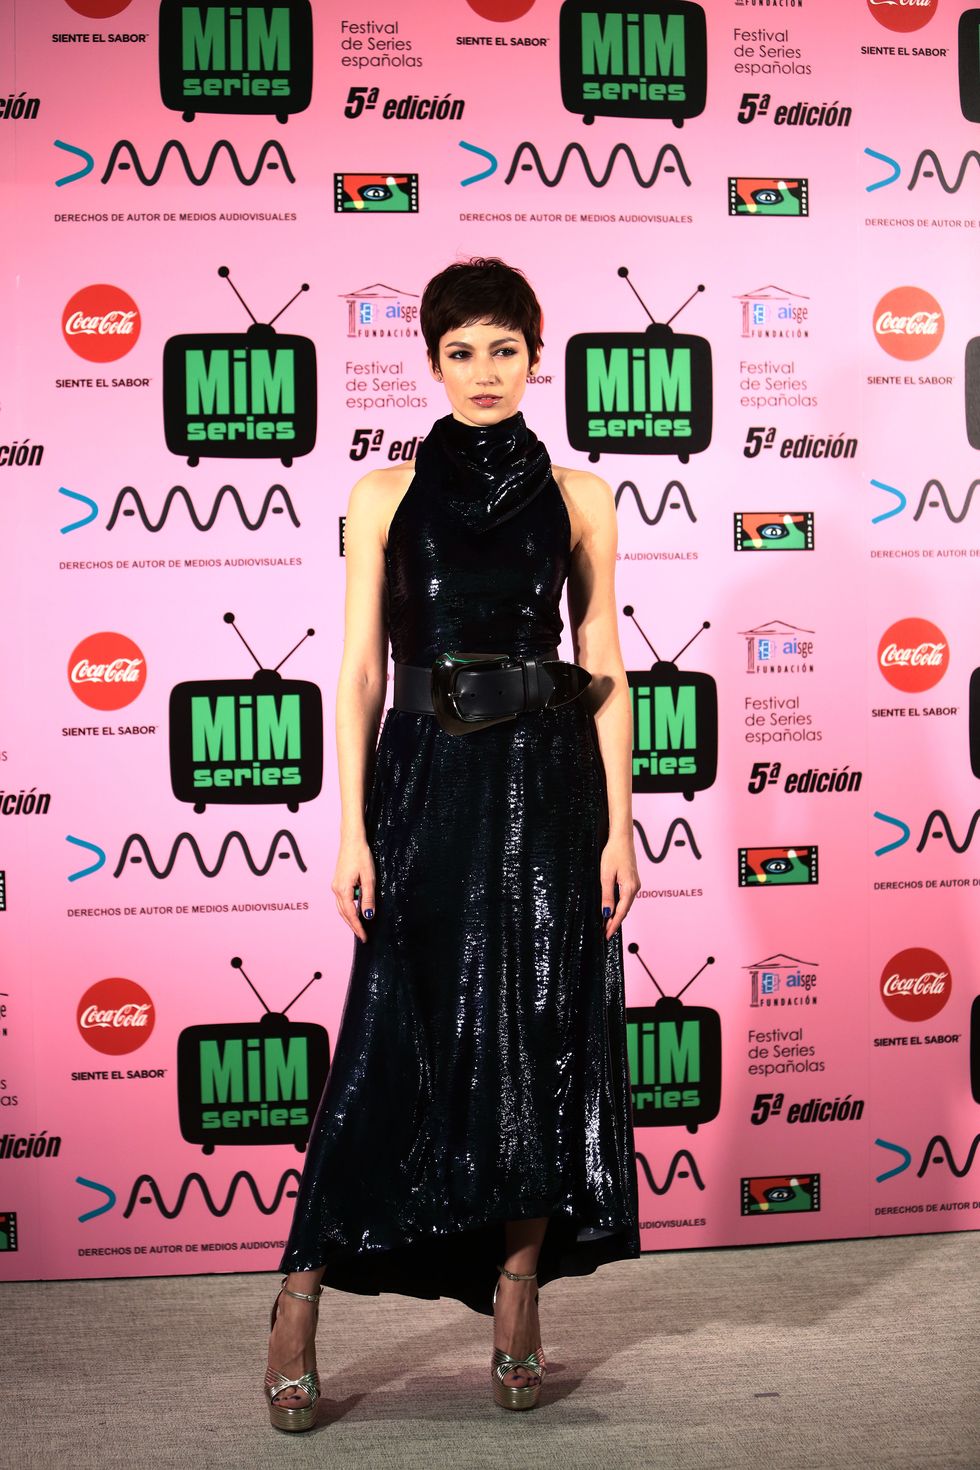 Para la entrega de premios del Festival MIM Series 2017, la actriz Úrsula Corberó ha lucido un vestido de terciopelo negro y cuello vuelto de Nina Ricci.